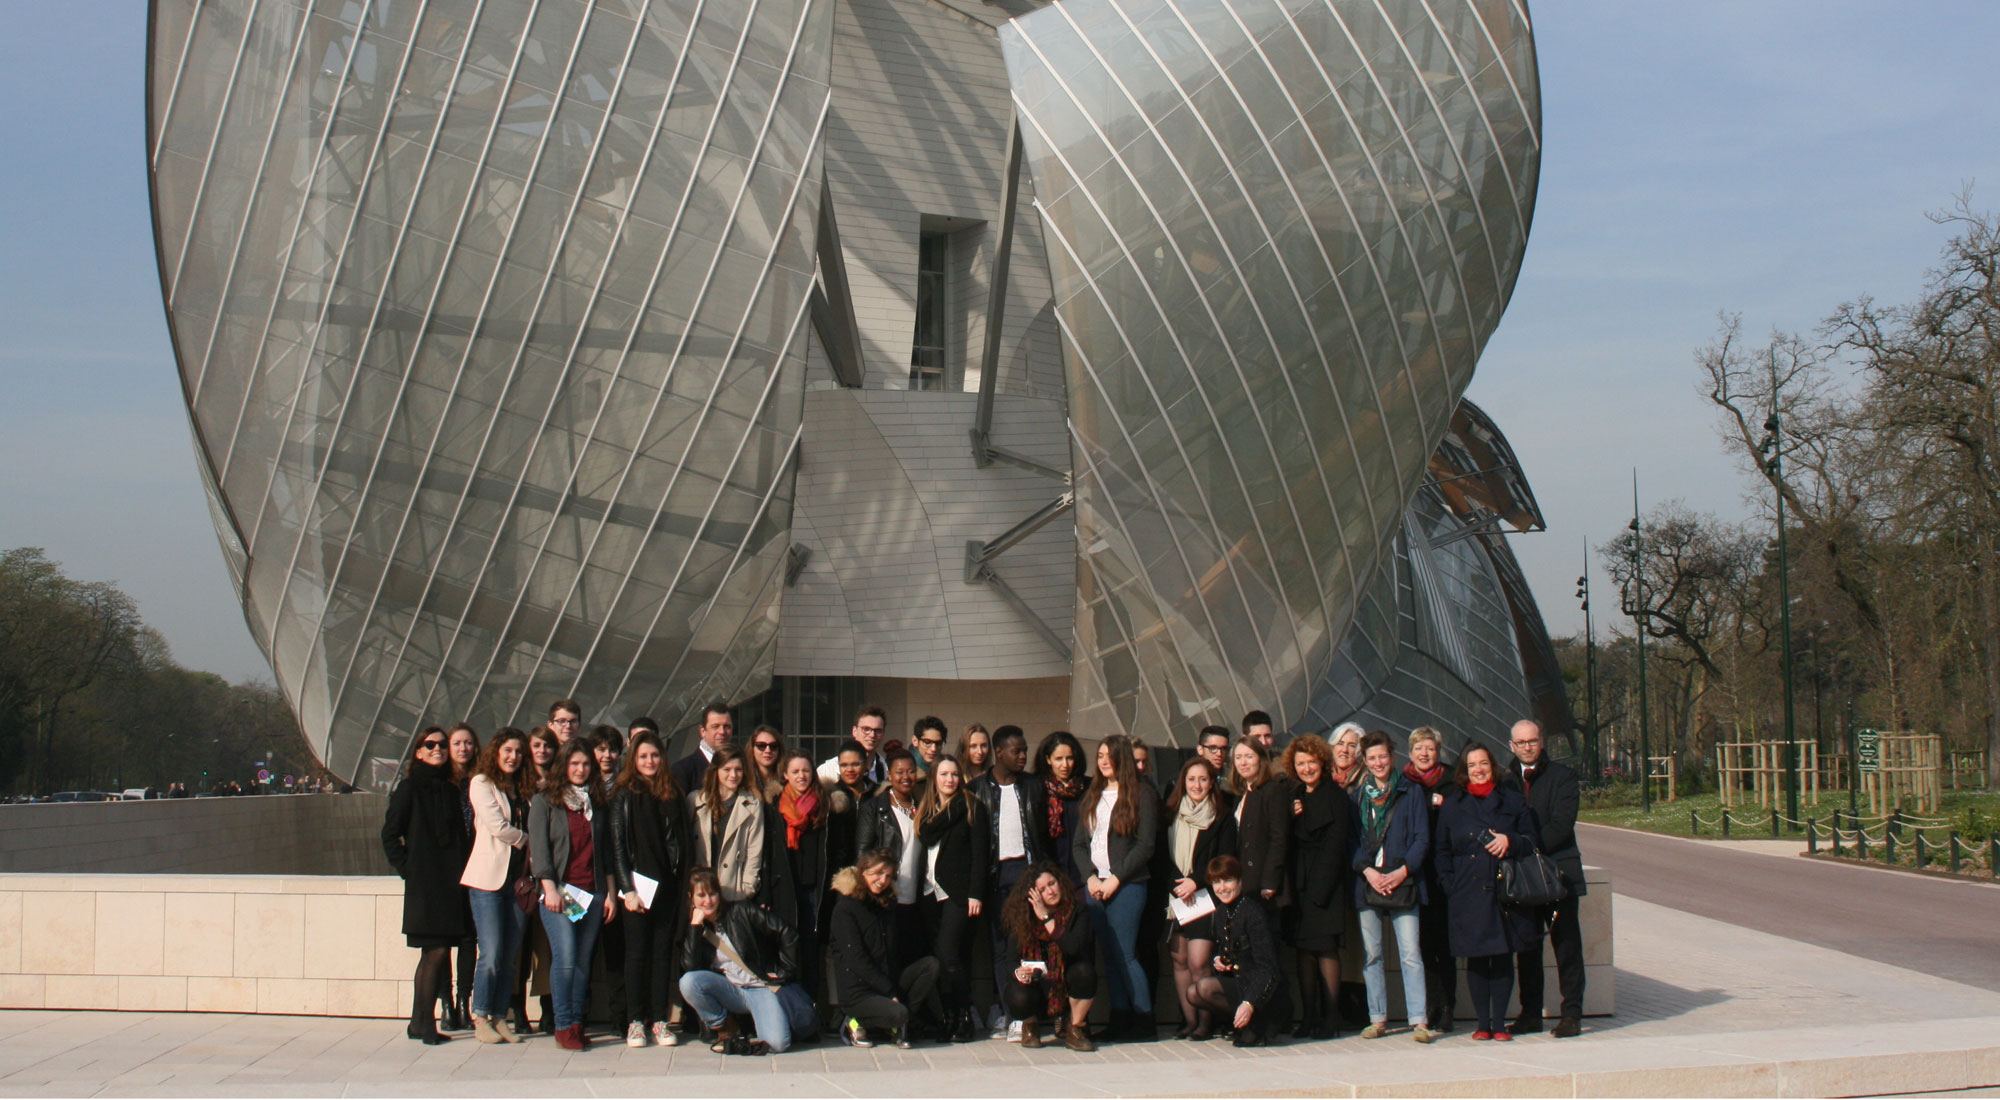 Fondation Louis Vuitton hosts major Mark Rothko retrospective from October  18